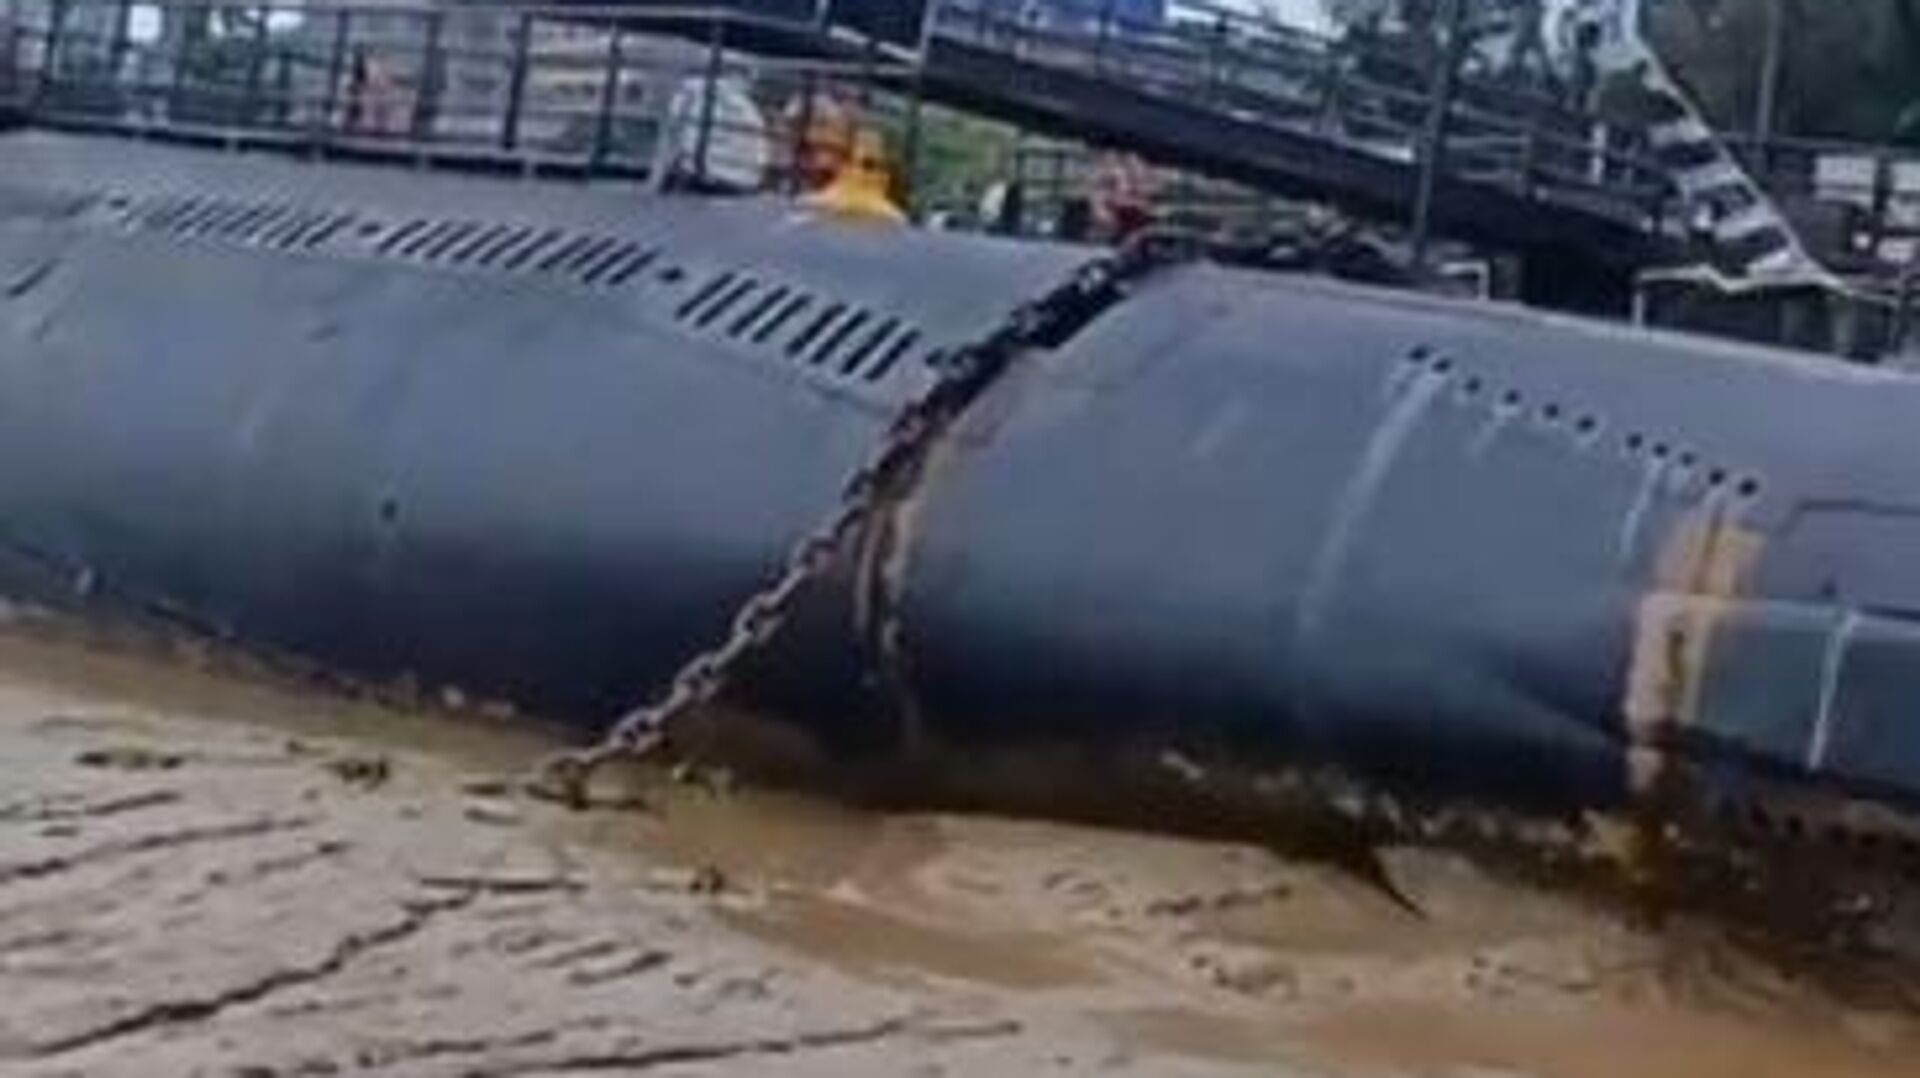  Китайская подводная лодка закончила улицу в грязи /видео/